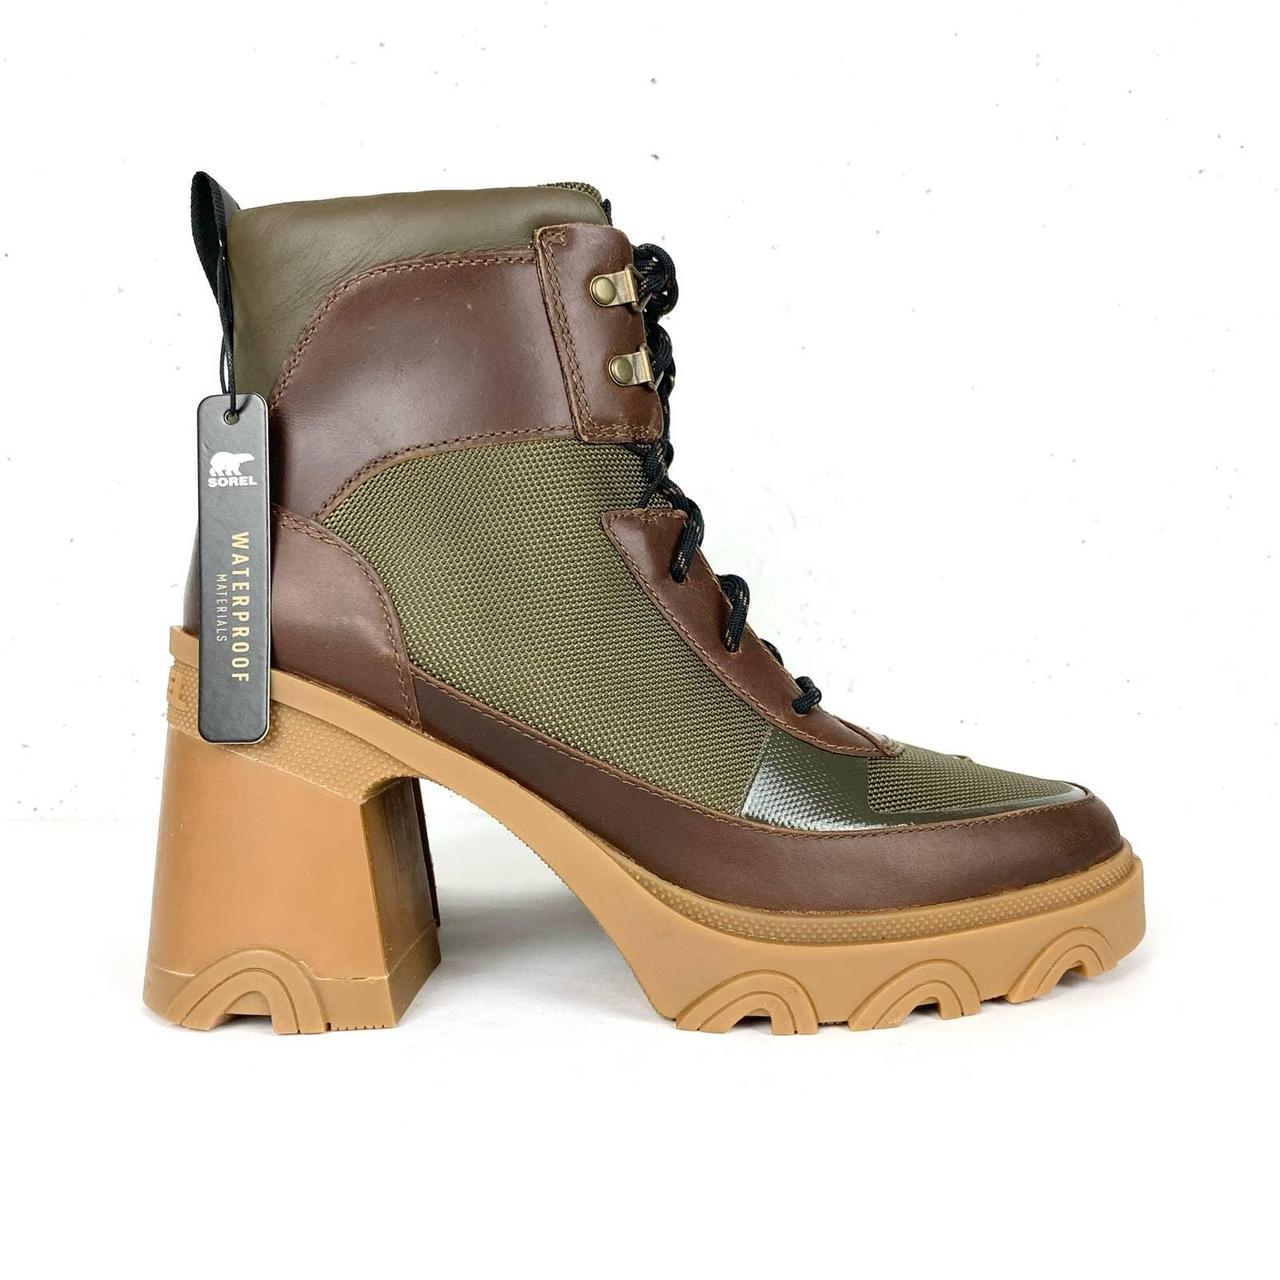 Louis Vuitton boot; Laureate Platform desert boots - - Depop